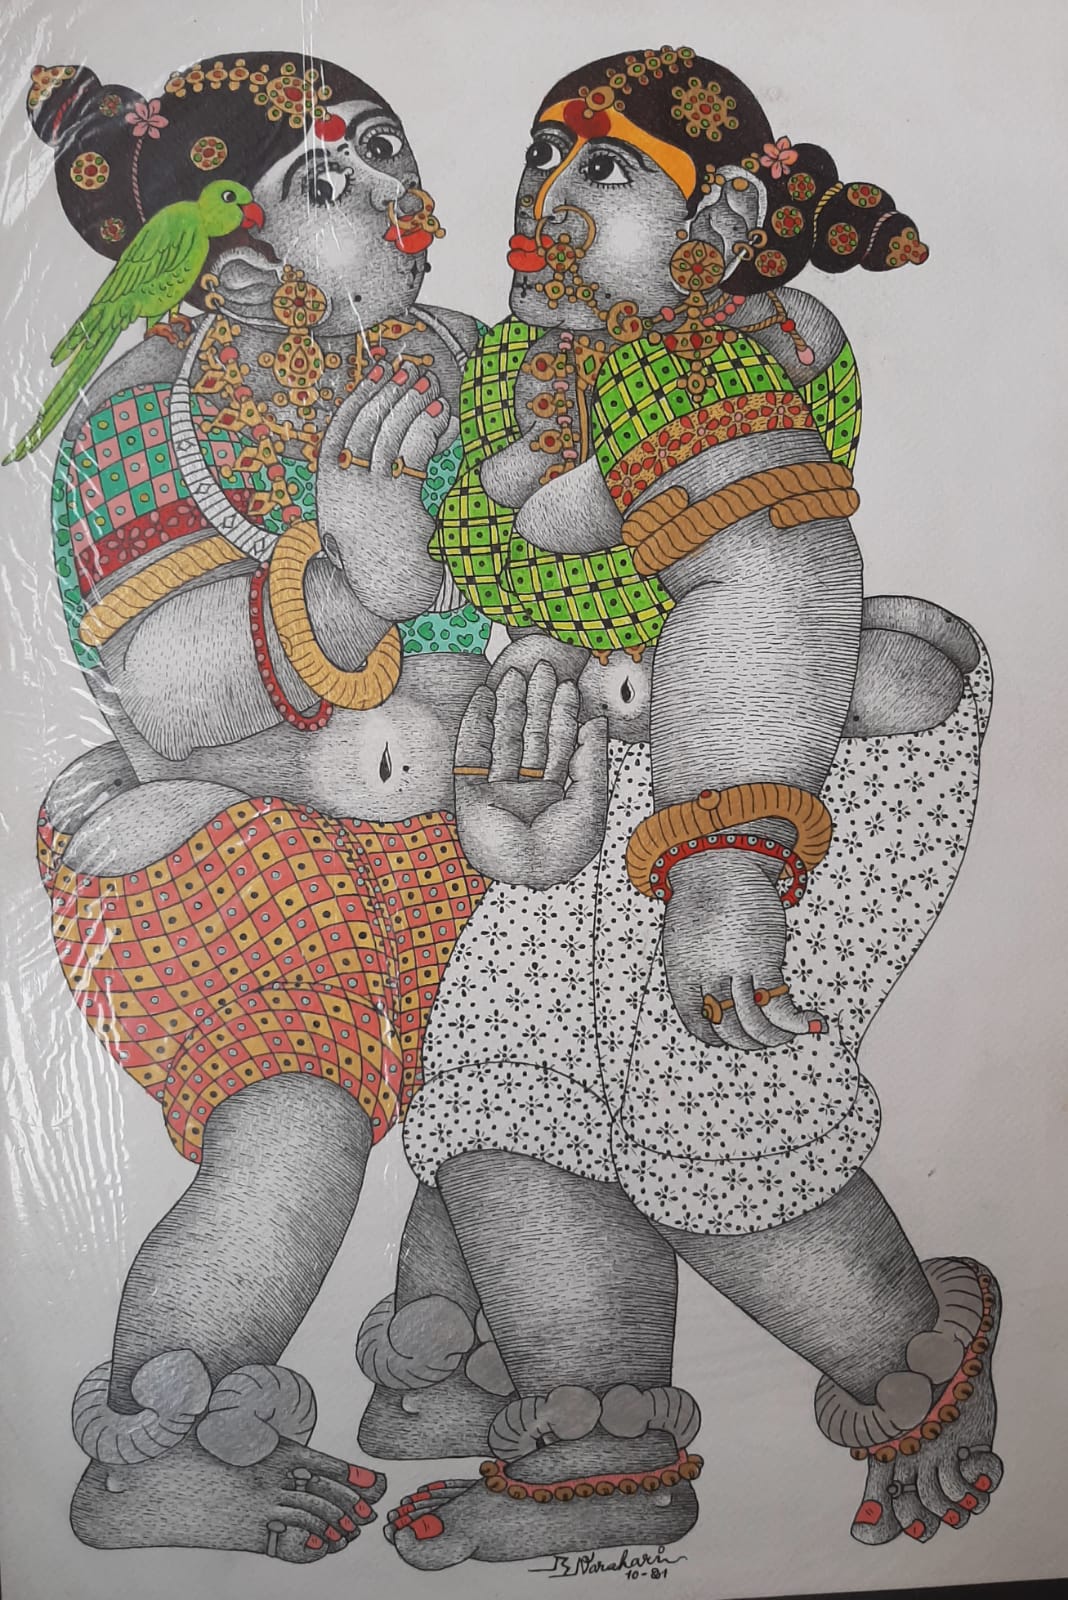 Bhawandla Narahari paintings